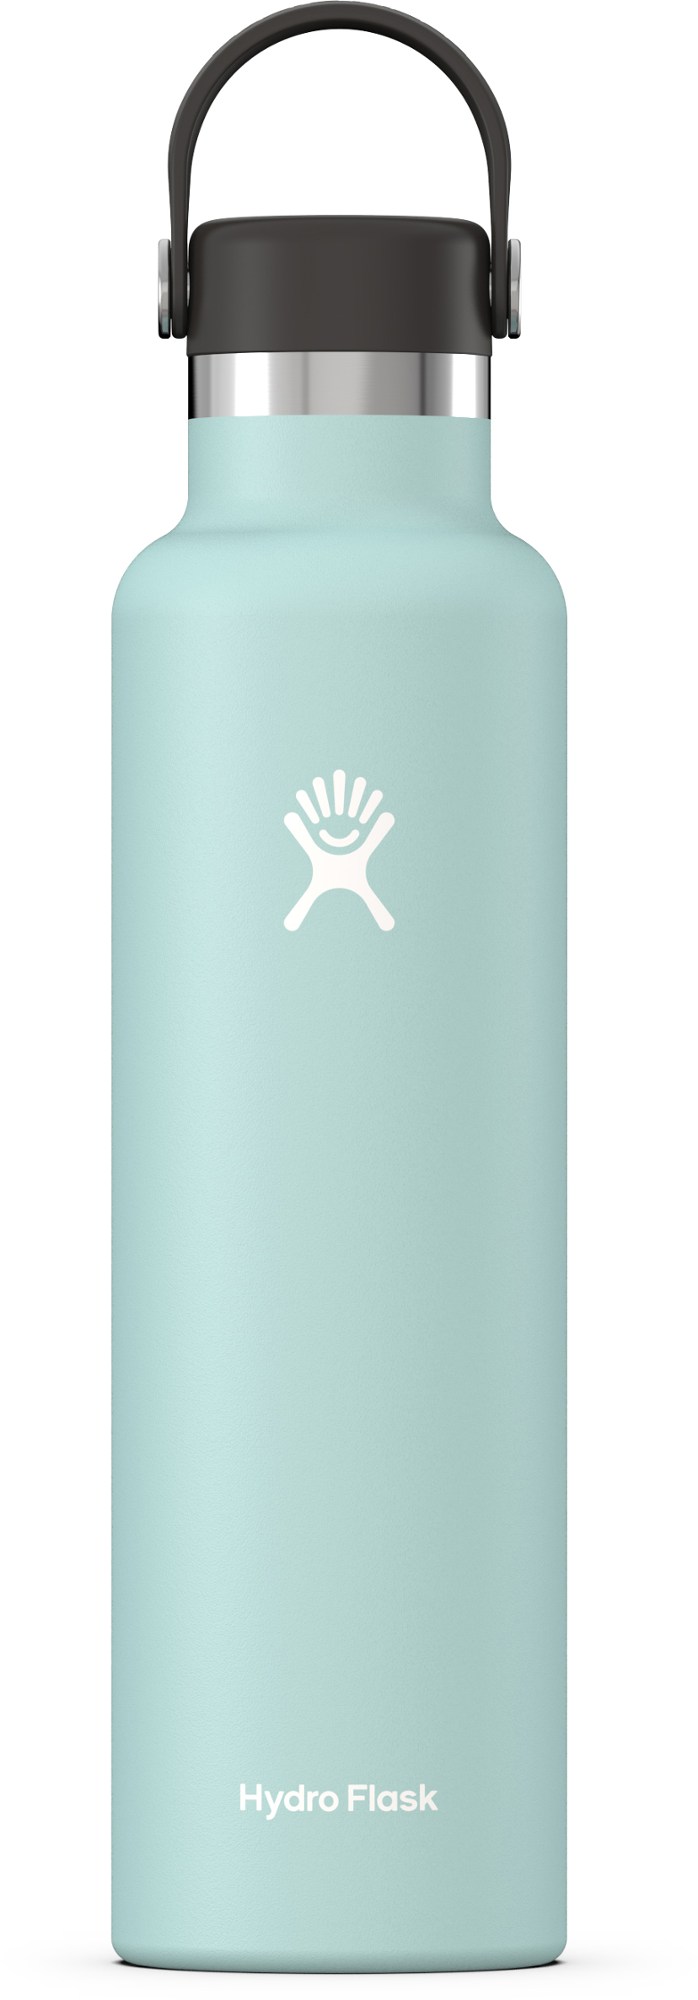 Hydro Flask Standard Mouth water bottle